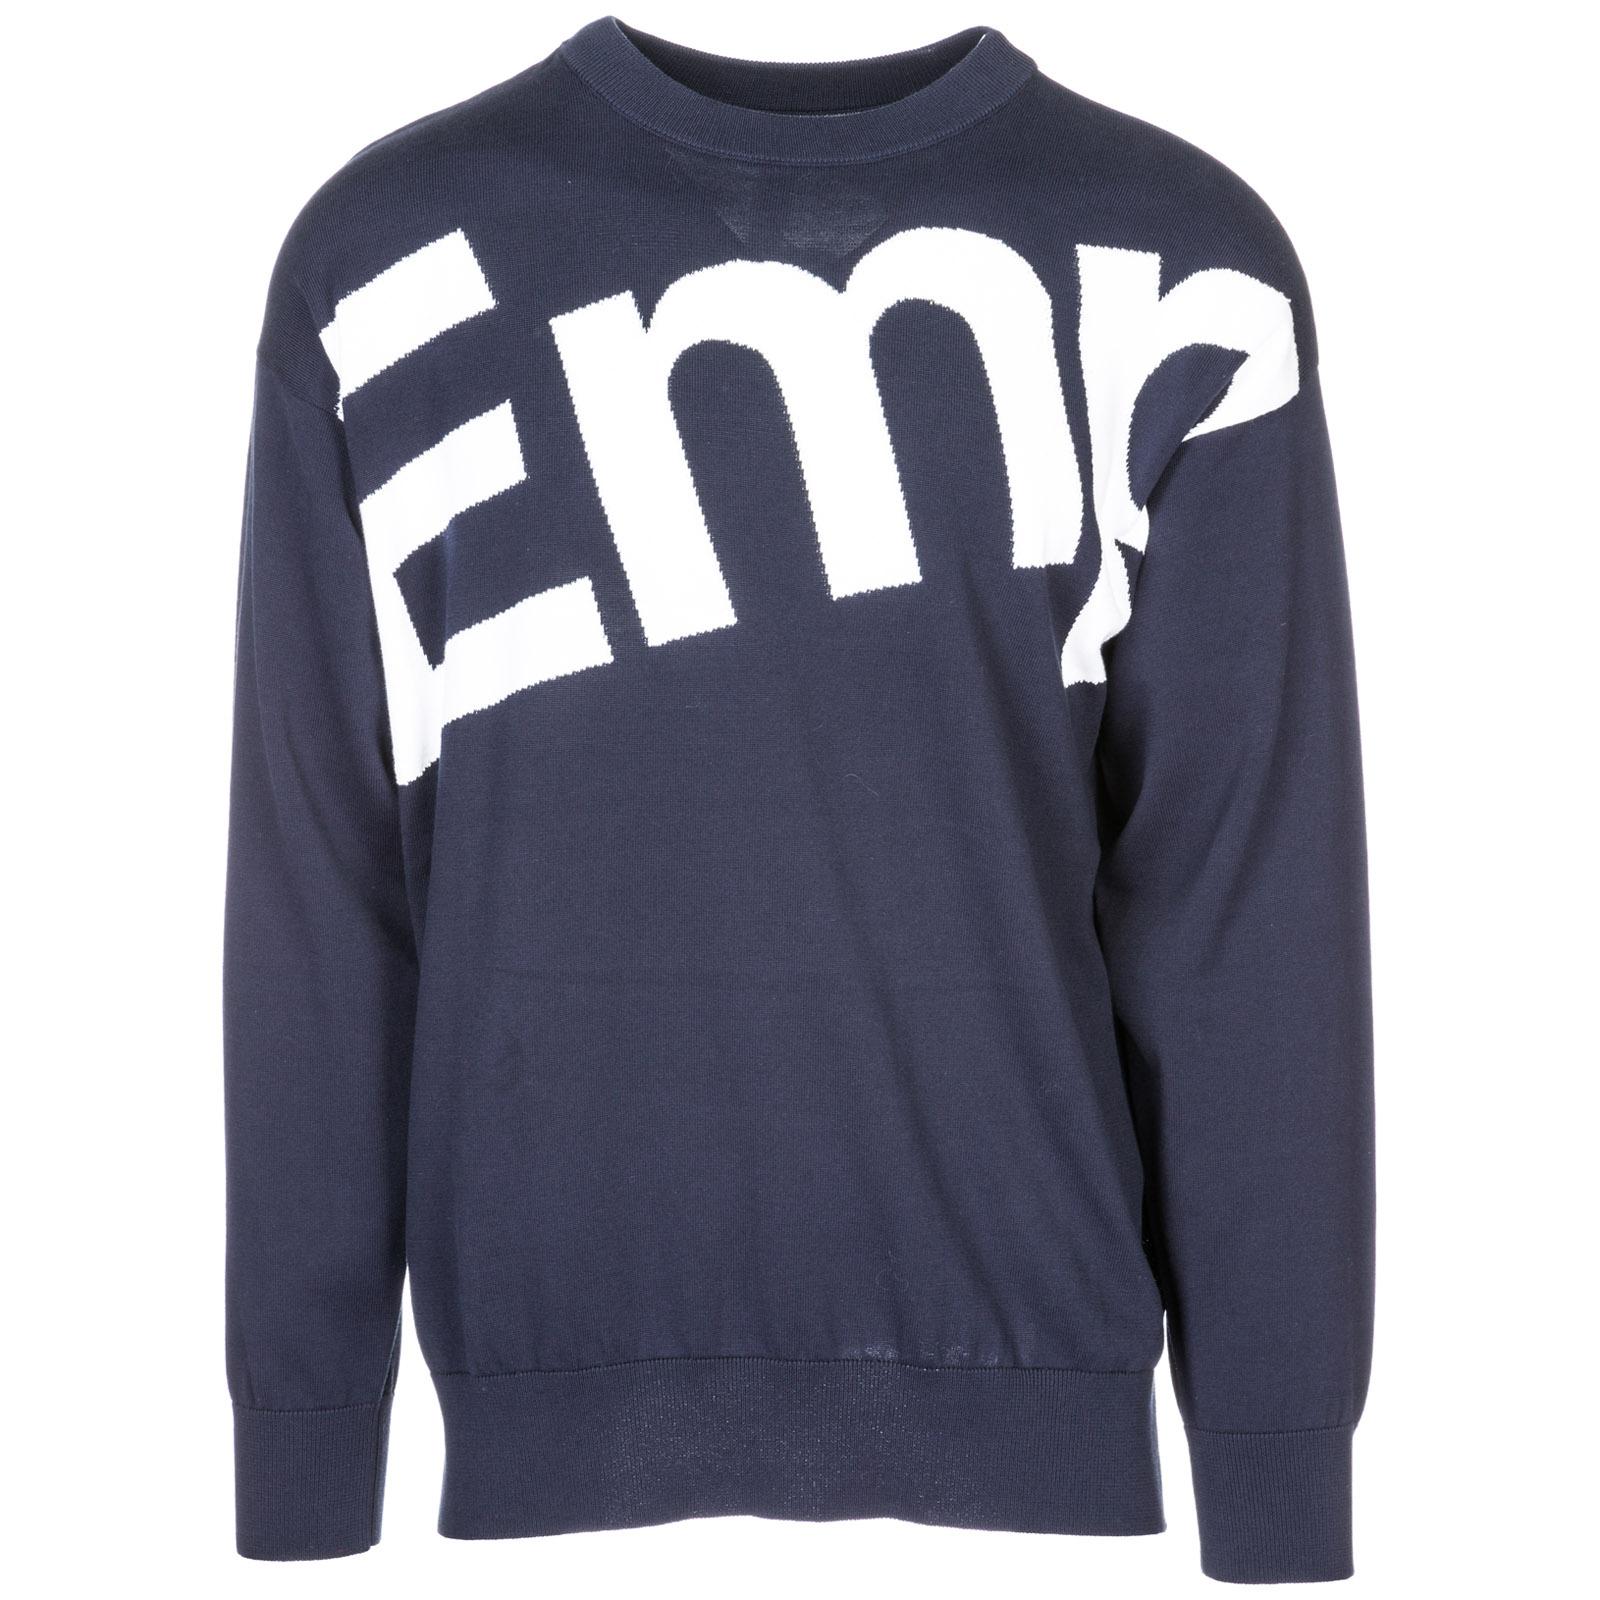 Lyst - Emporio Armani Crew Neck Neckline Jumper Sweater Pullover Over ...